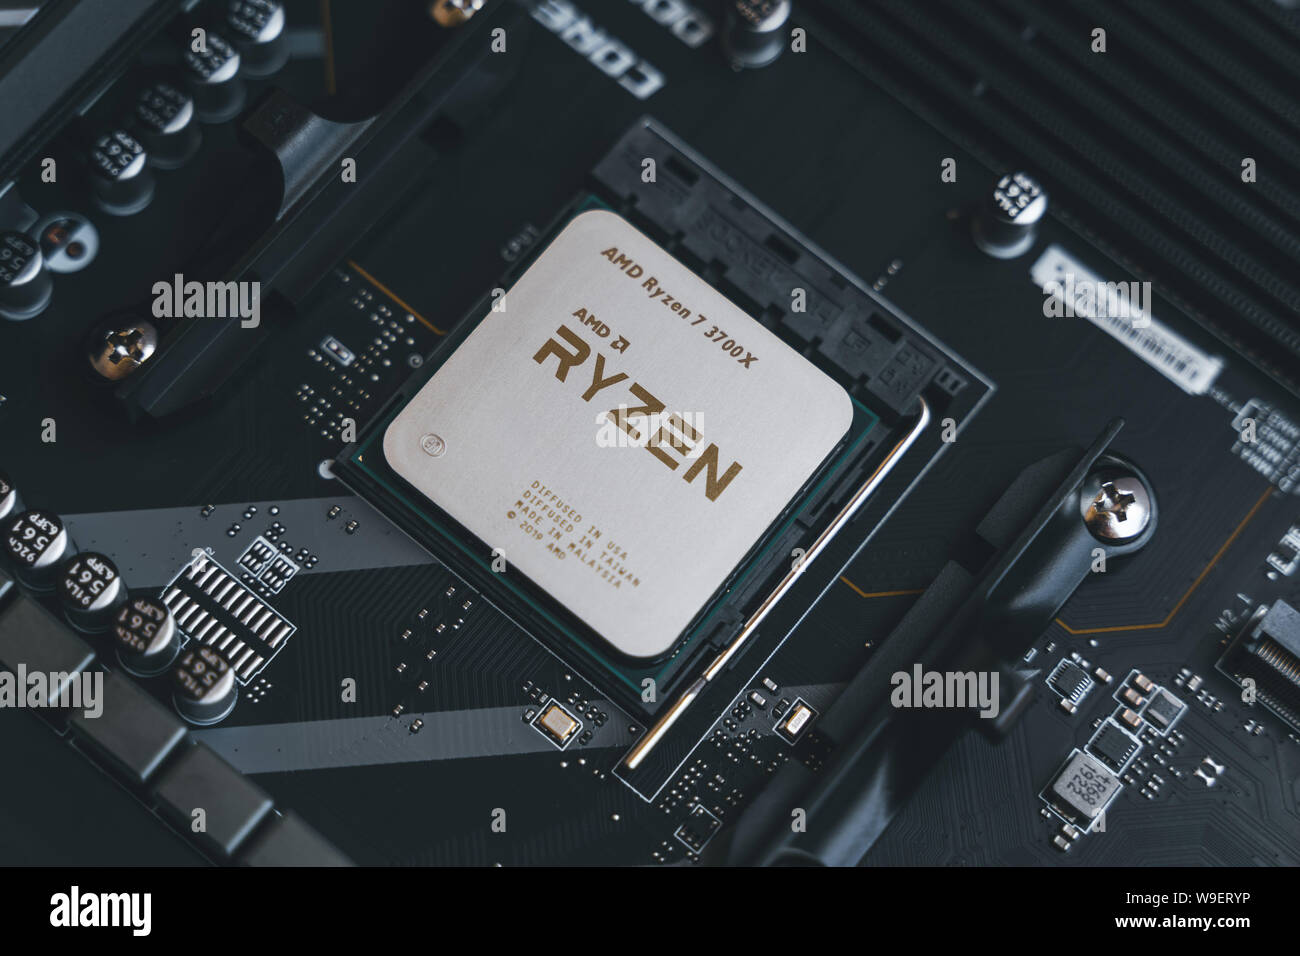 AMD Ryzen 3700x processore nel connettore X570 socket della scheda madre.  Nuovo Zen 2, 7 nanometri CPU desktop con processori AMD. Molto popolare di  terza generazione 3000 Ryzen processore Foto stock - Alamy